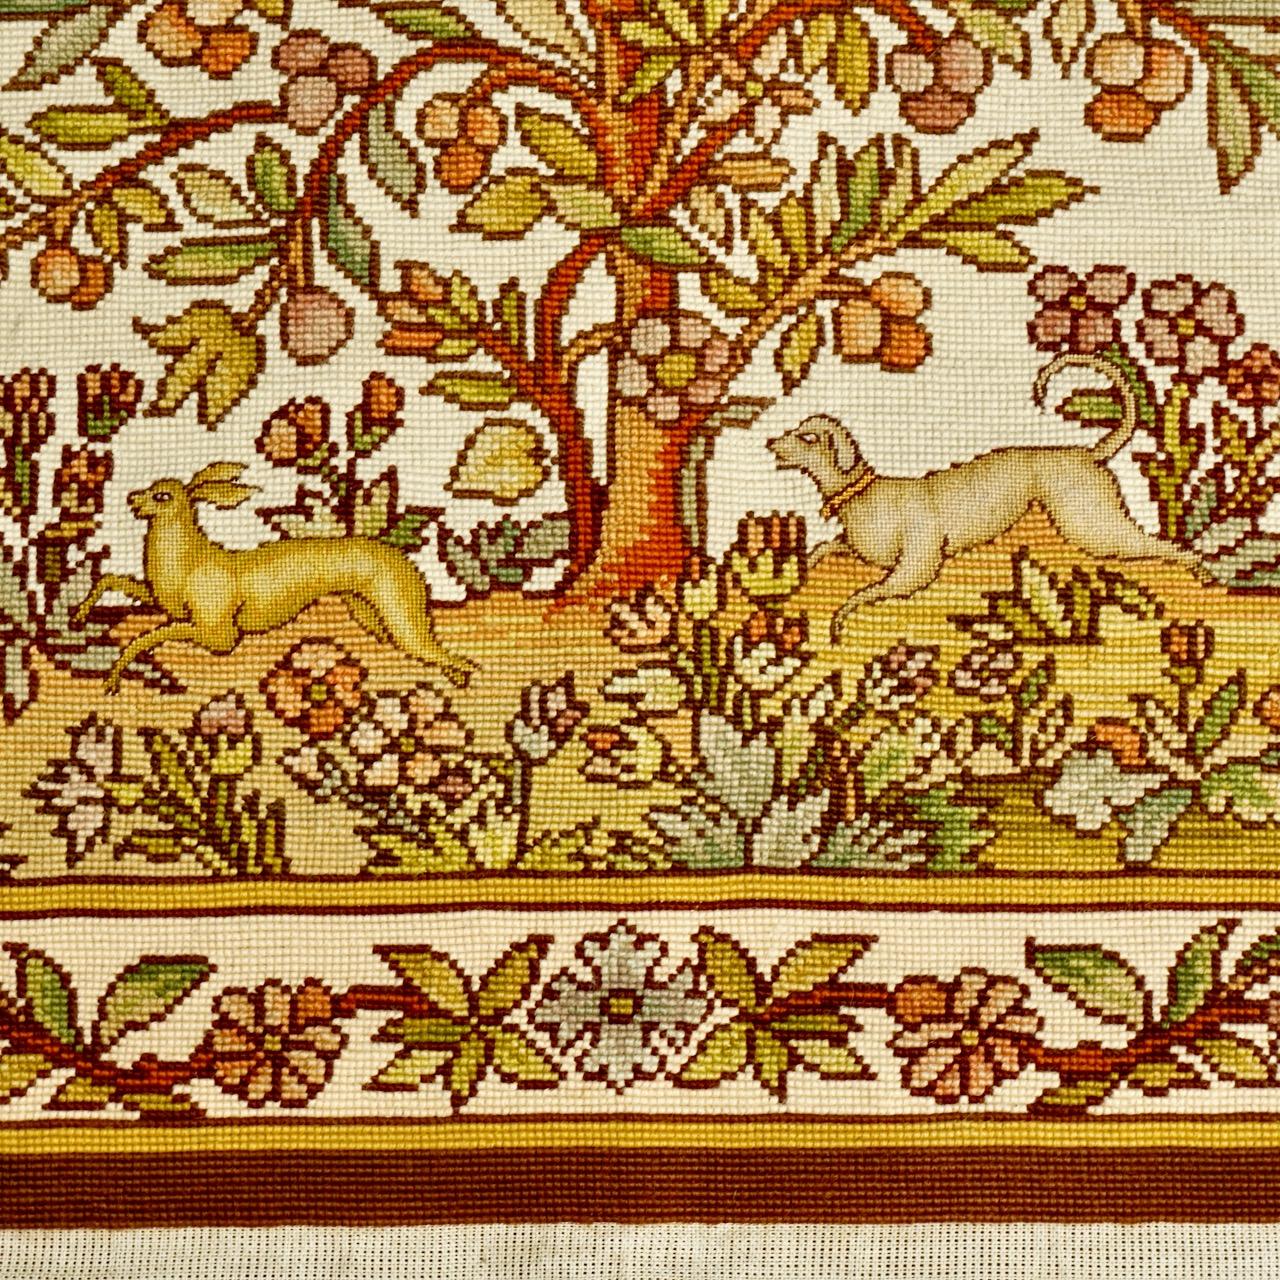 
Wunderschöner Wandteppich mit einem mittelalterlichen Muster in warmen Farben. Mit einem Obstbaum, einem Vogel, Blumen und einem Hund, der ein Kaninchen jagt. Der Wandteppich ist handgefertigt. Das Stück ist 78,5 cm breit und 75 cm lang. Der